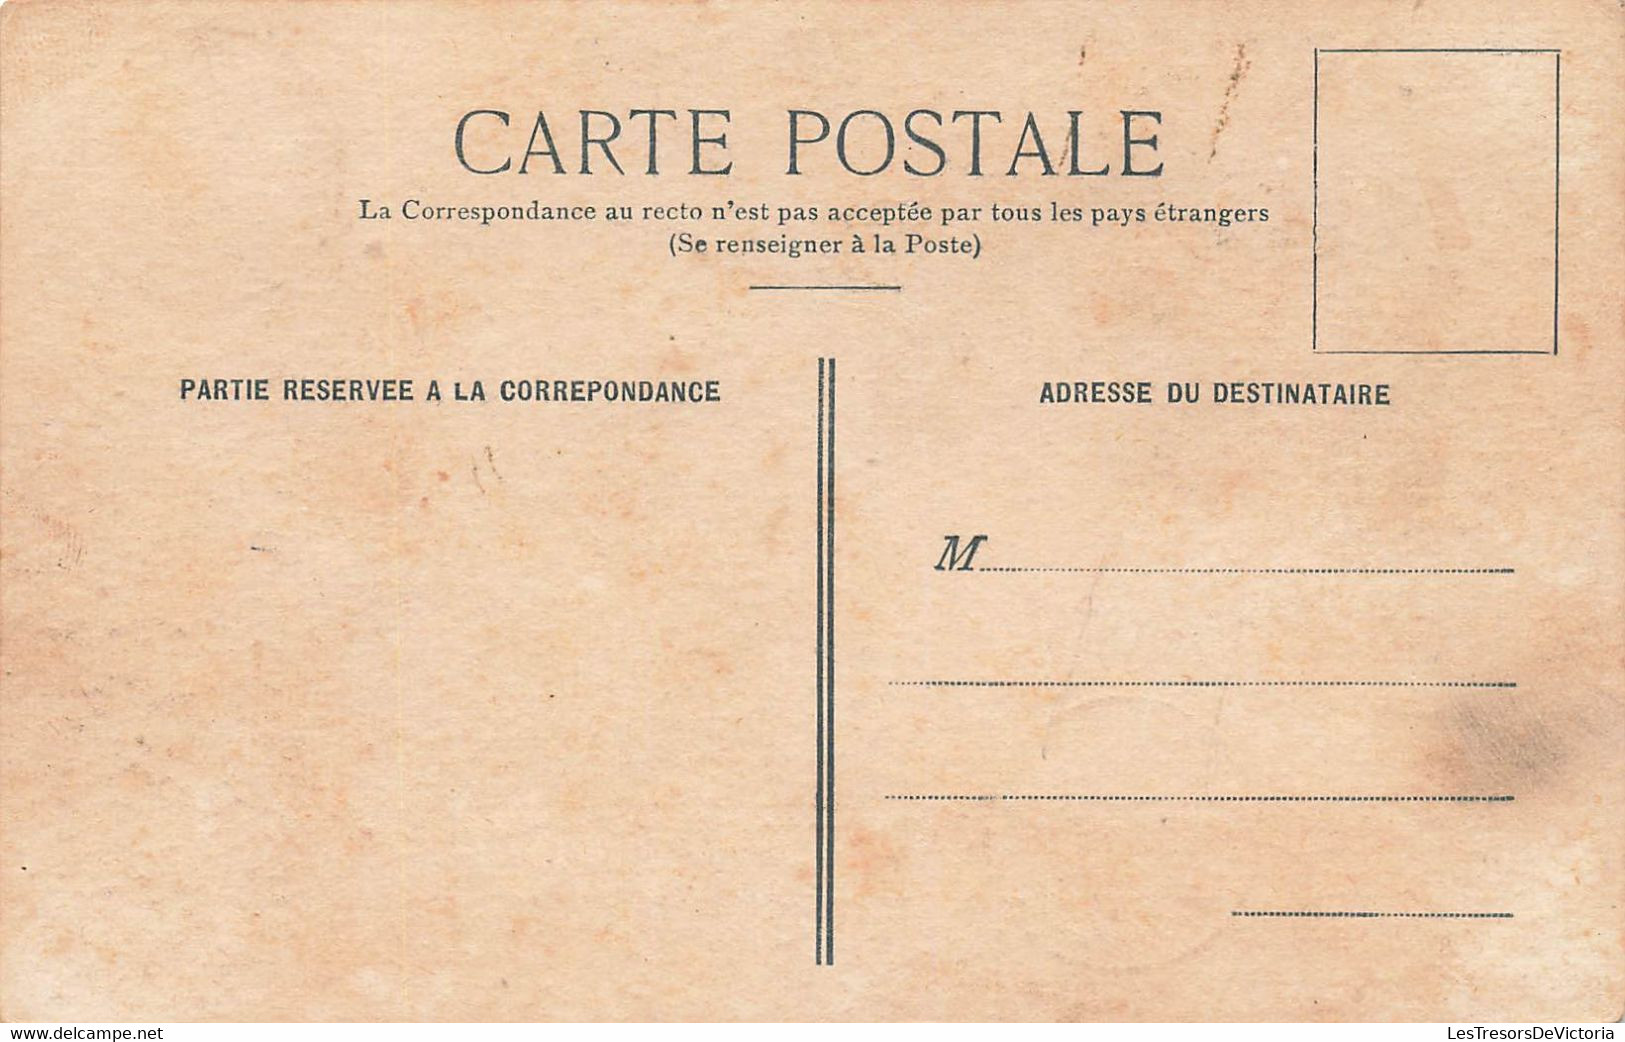 CPA NOUVELLE CALEDONIE - Cinq Condamnés à Mort - Henry Caporn - Circulé à Papeete En 1908 - Nuova Caledonia